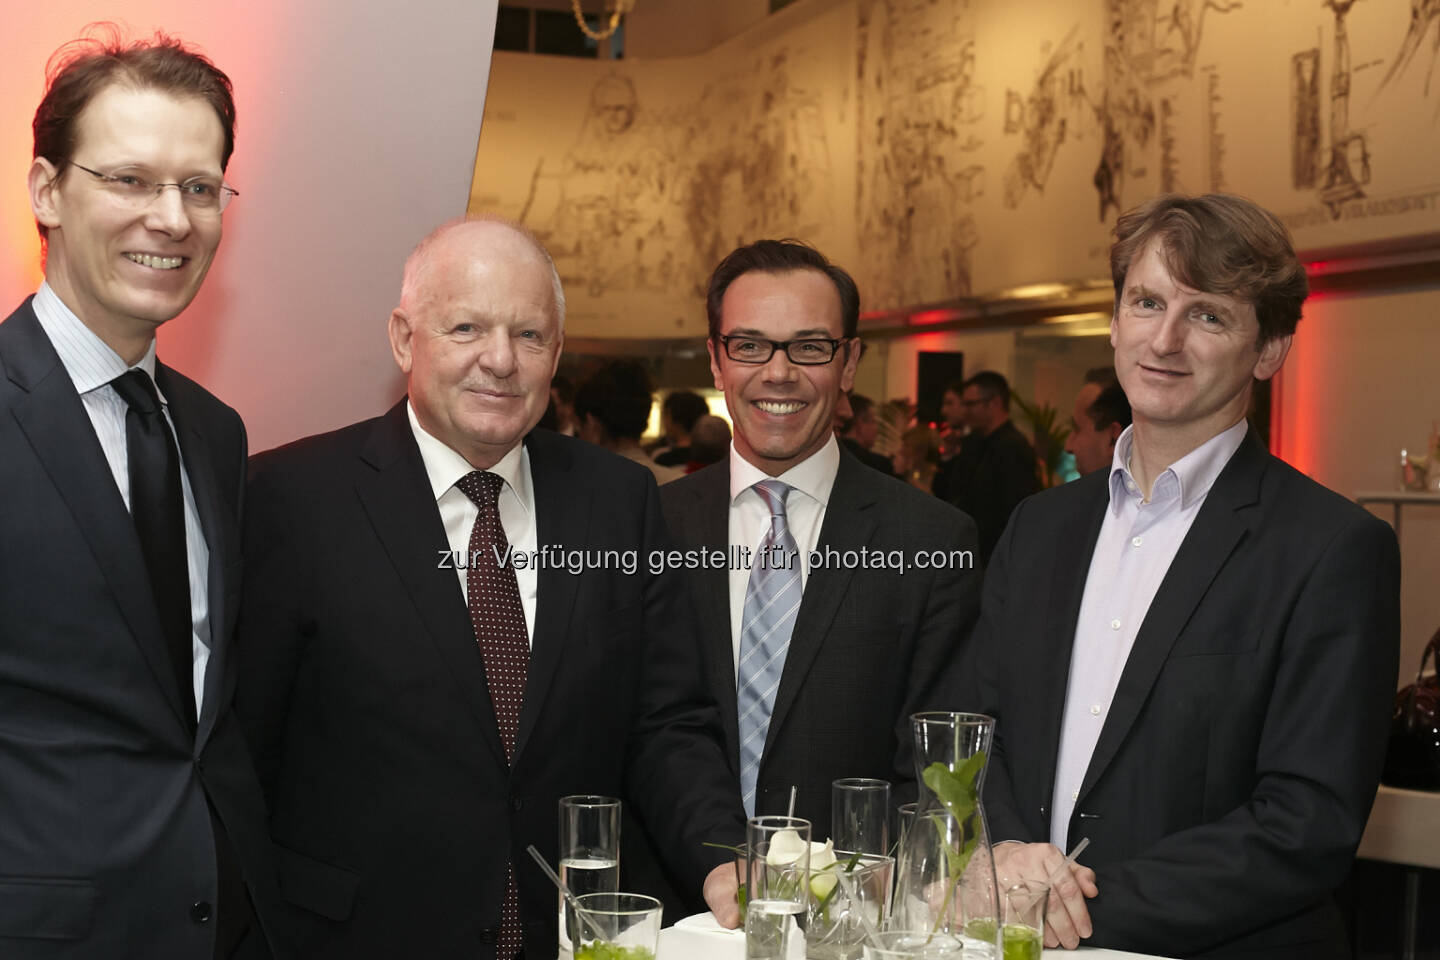 Michael Spitzbart (OMV), Reinhard Pinzer (Siemens), Gerhard Pichler (Business Circle) und Alexander Holst (Accenture)